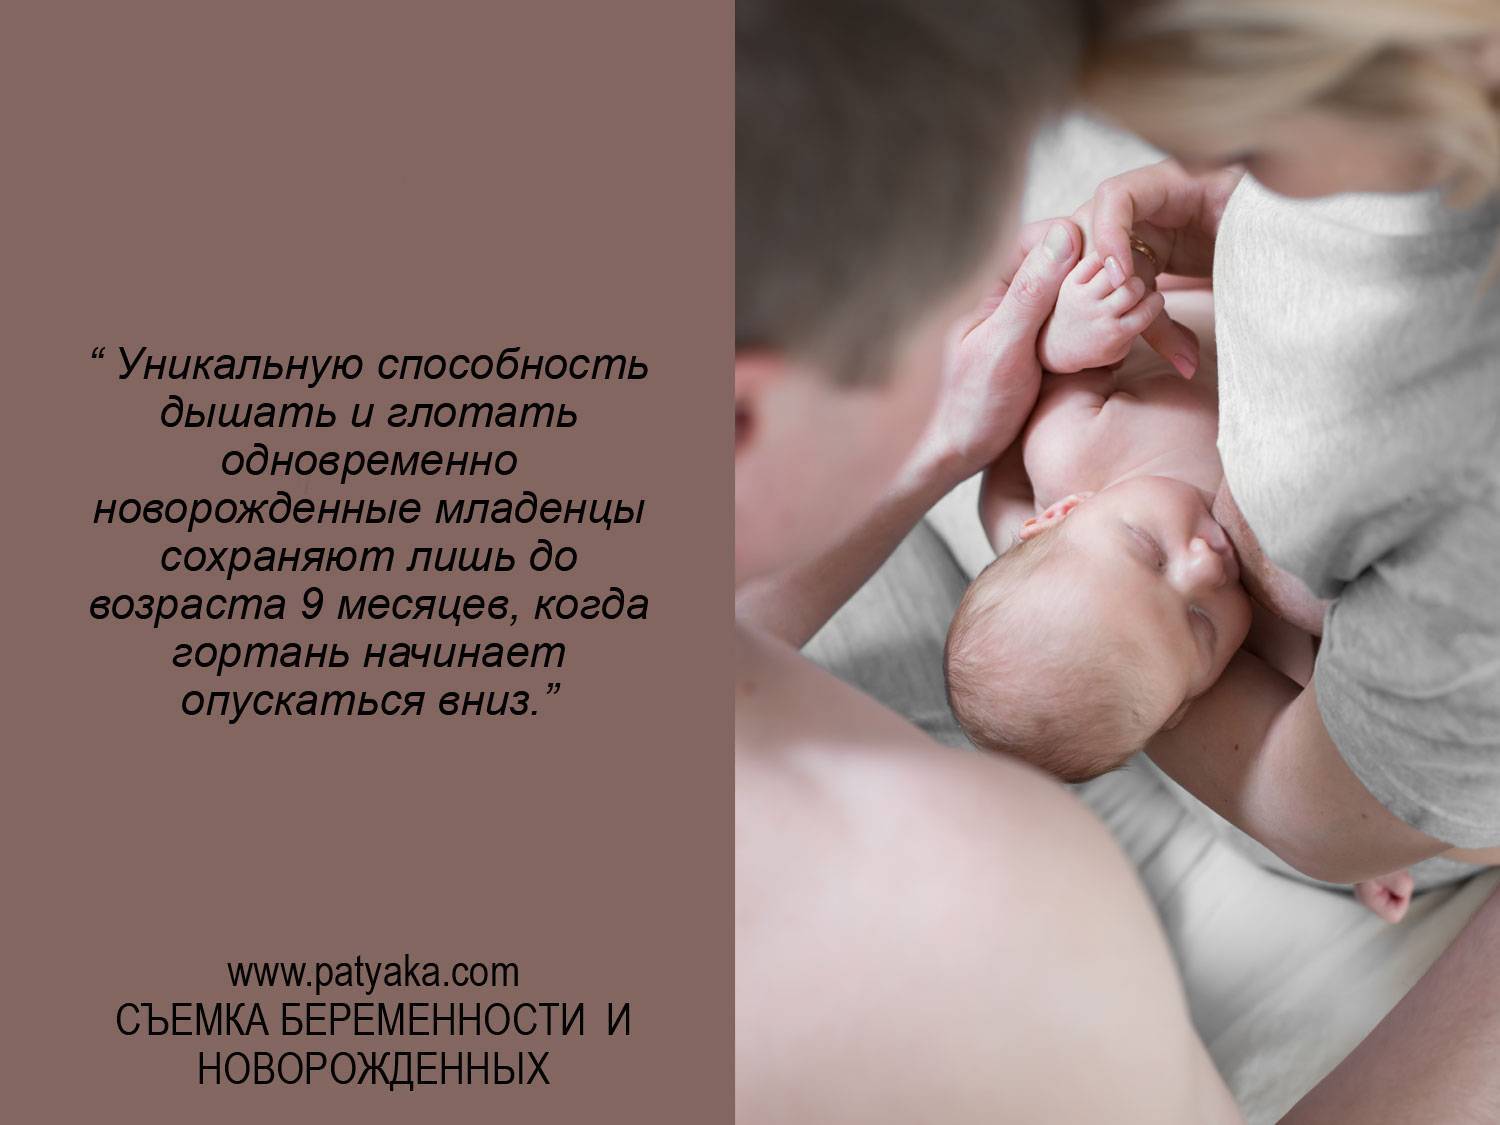 Интересные факты о новорождённых детях - zefirka